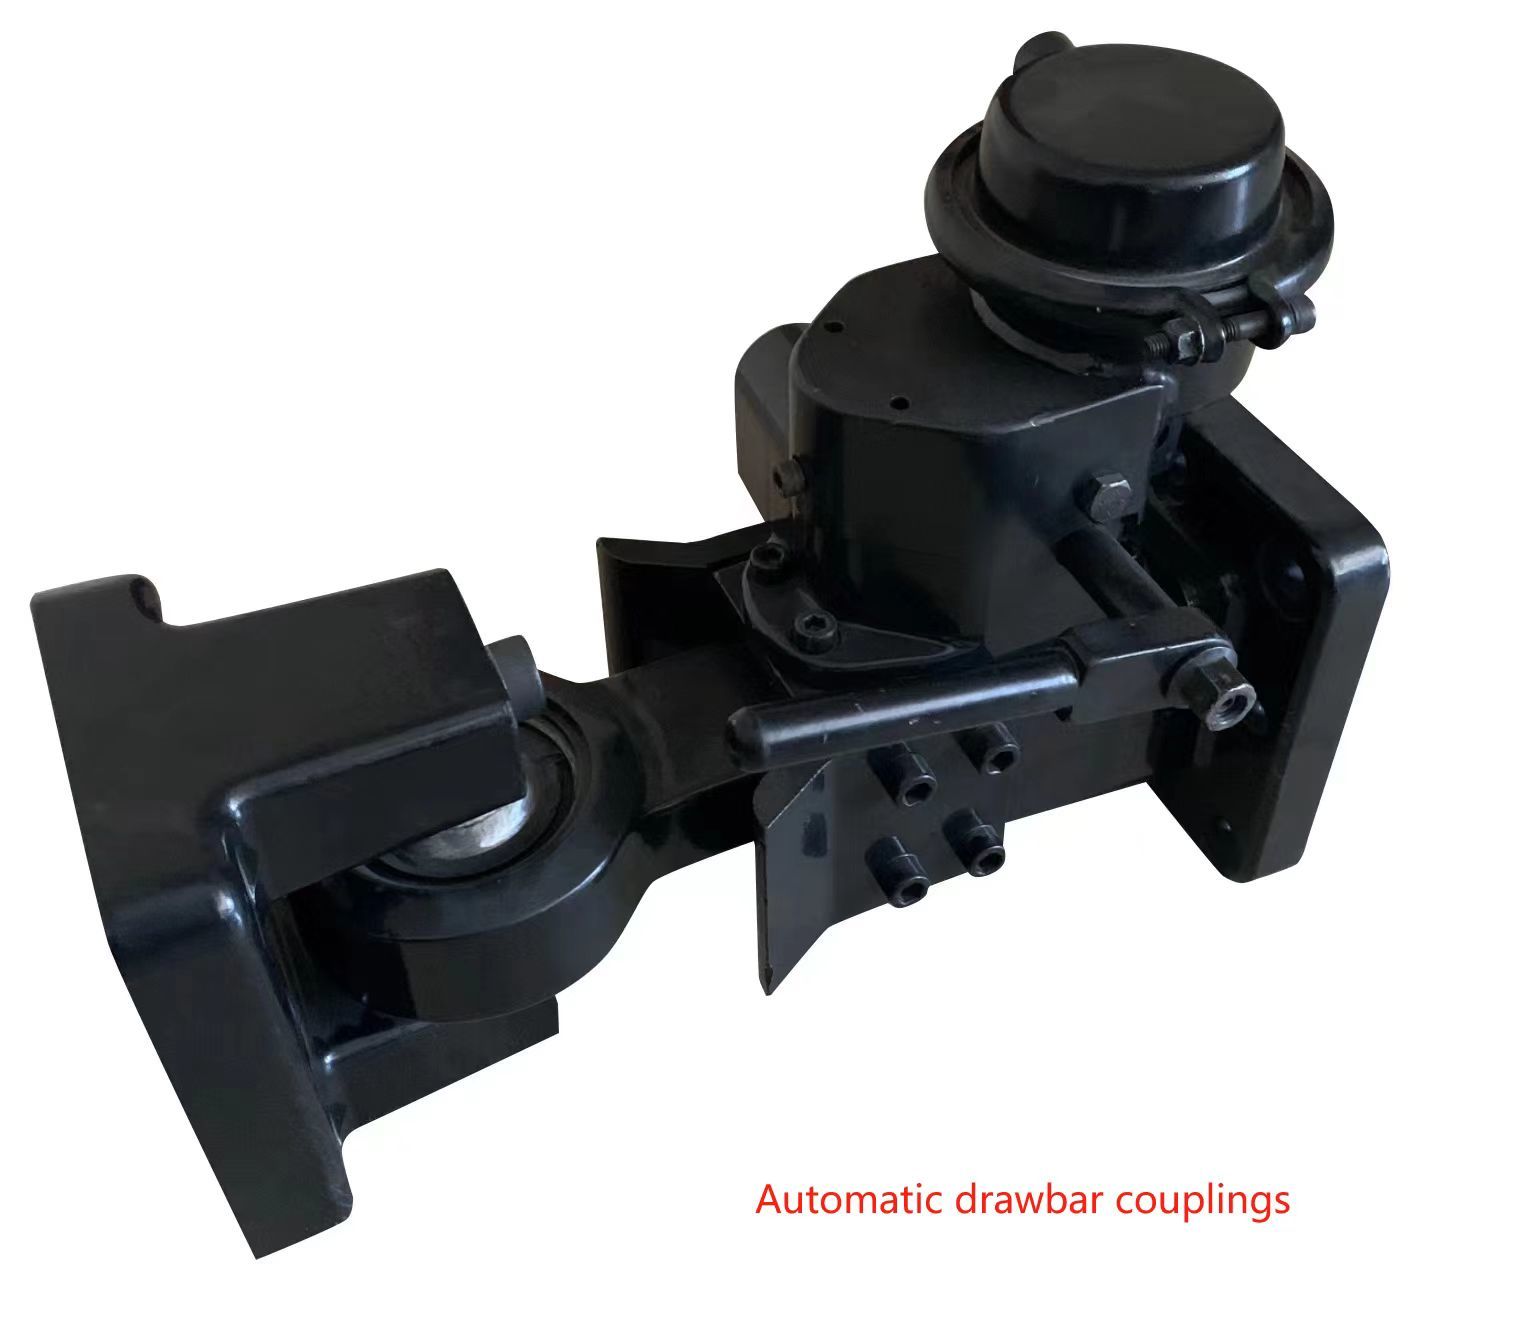 Automatic drawbar couplings